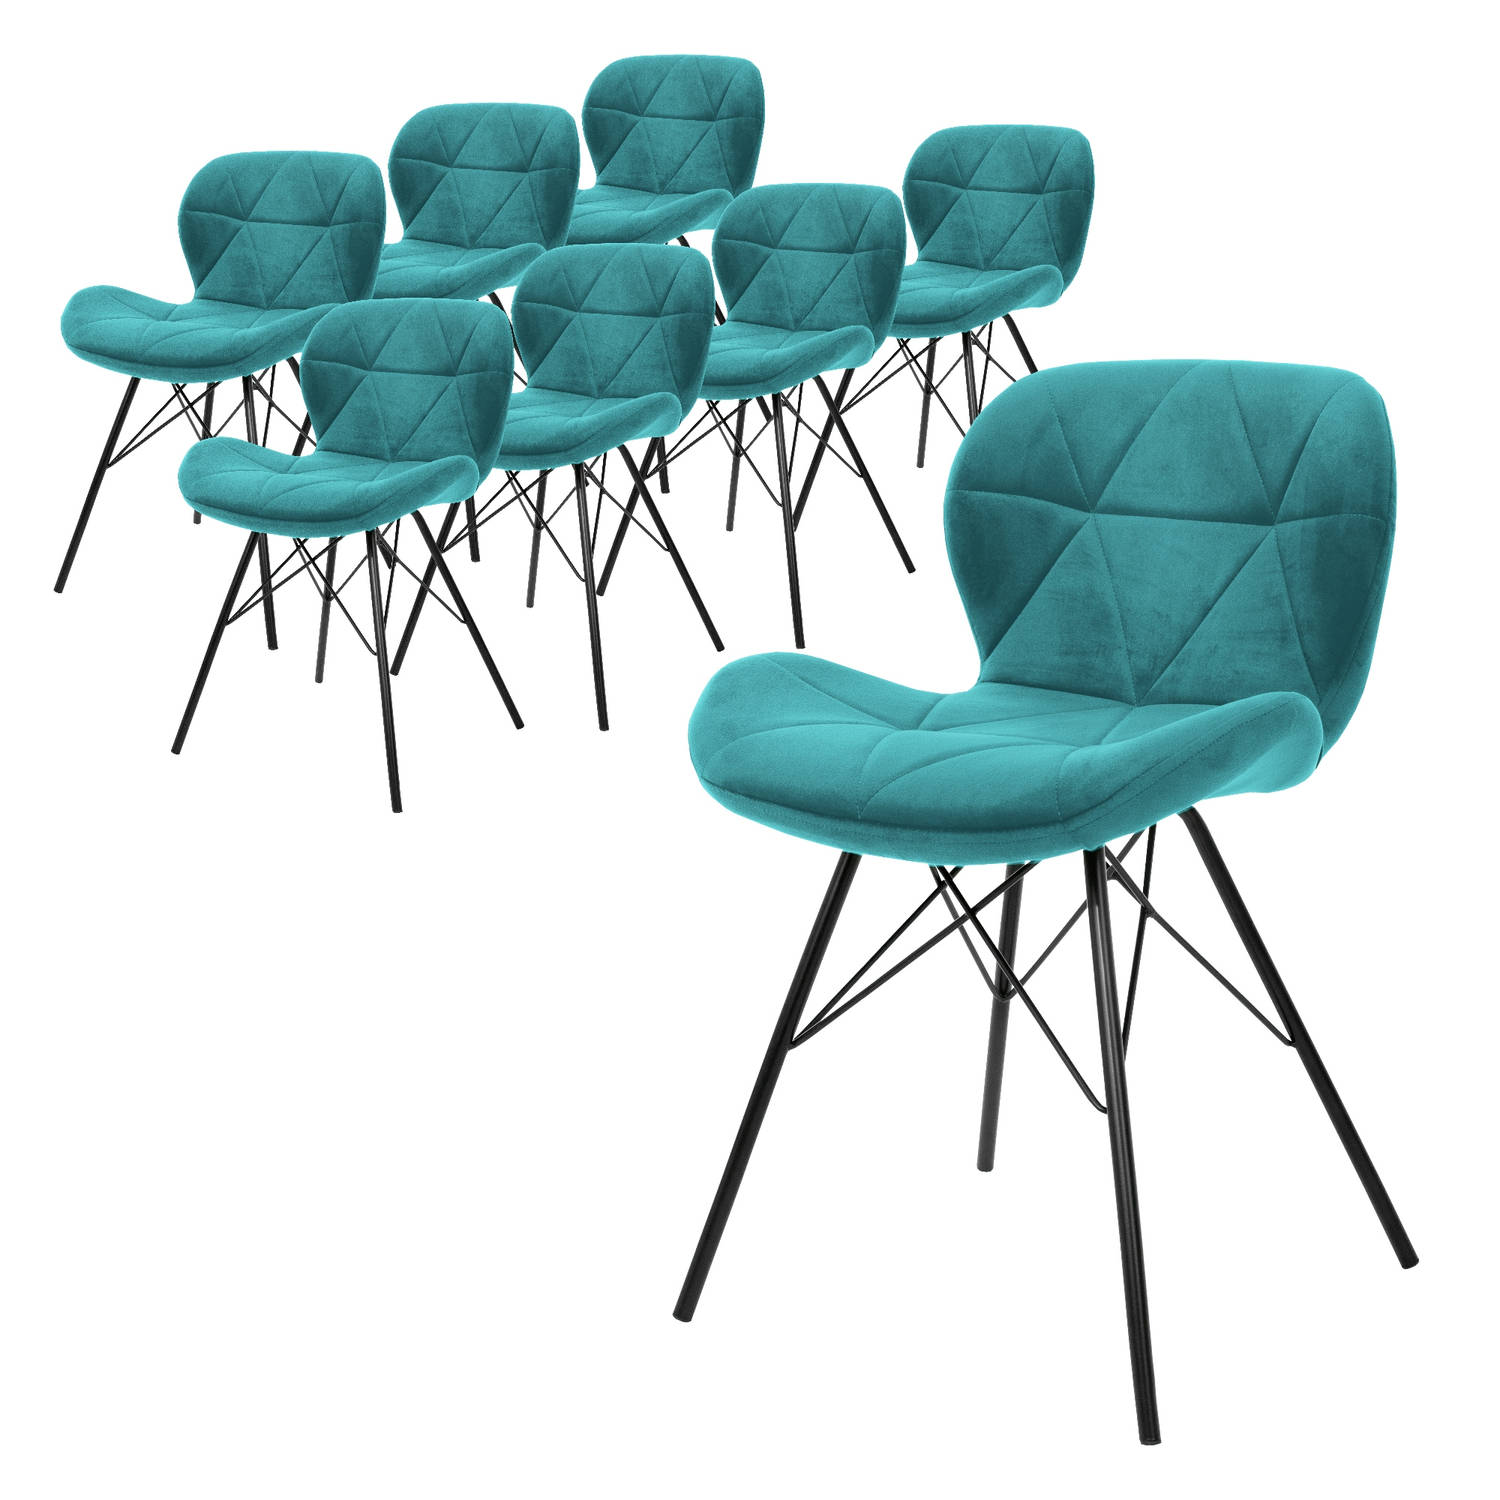 ML-Design Set van 8 eetkamerstoelen met rugleuning, turquoise, keukenstoel met fluwelen bekleding, gestoffeerde stoel met metalen poten, ergonomische stoel voor eettafel, woonkamer